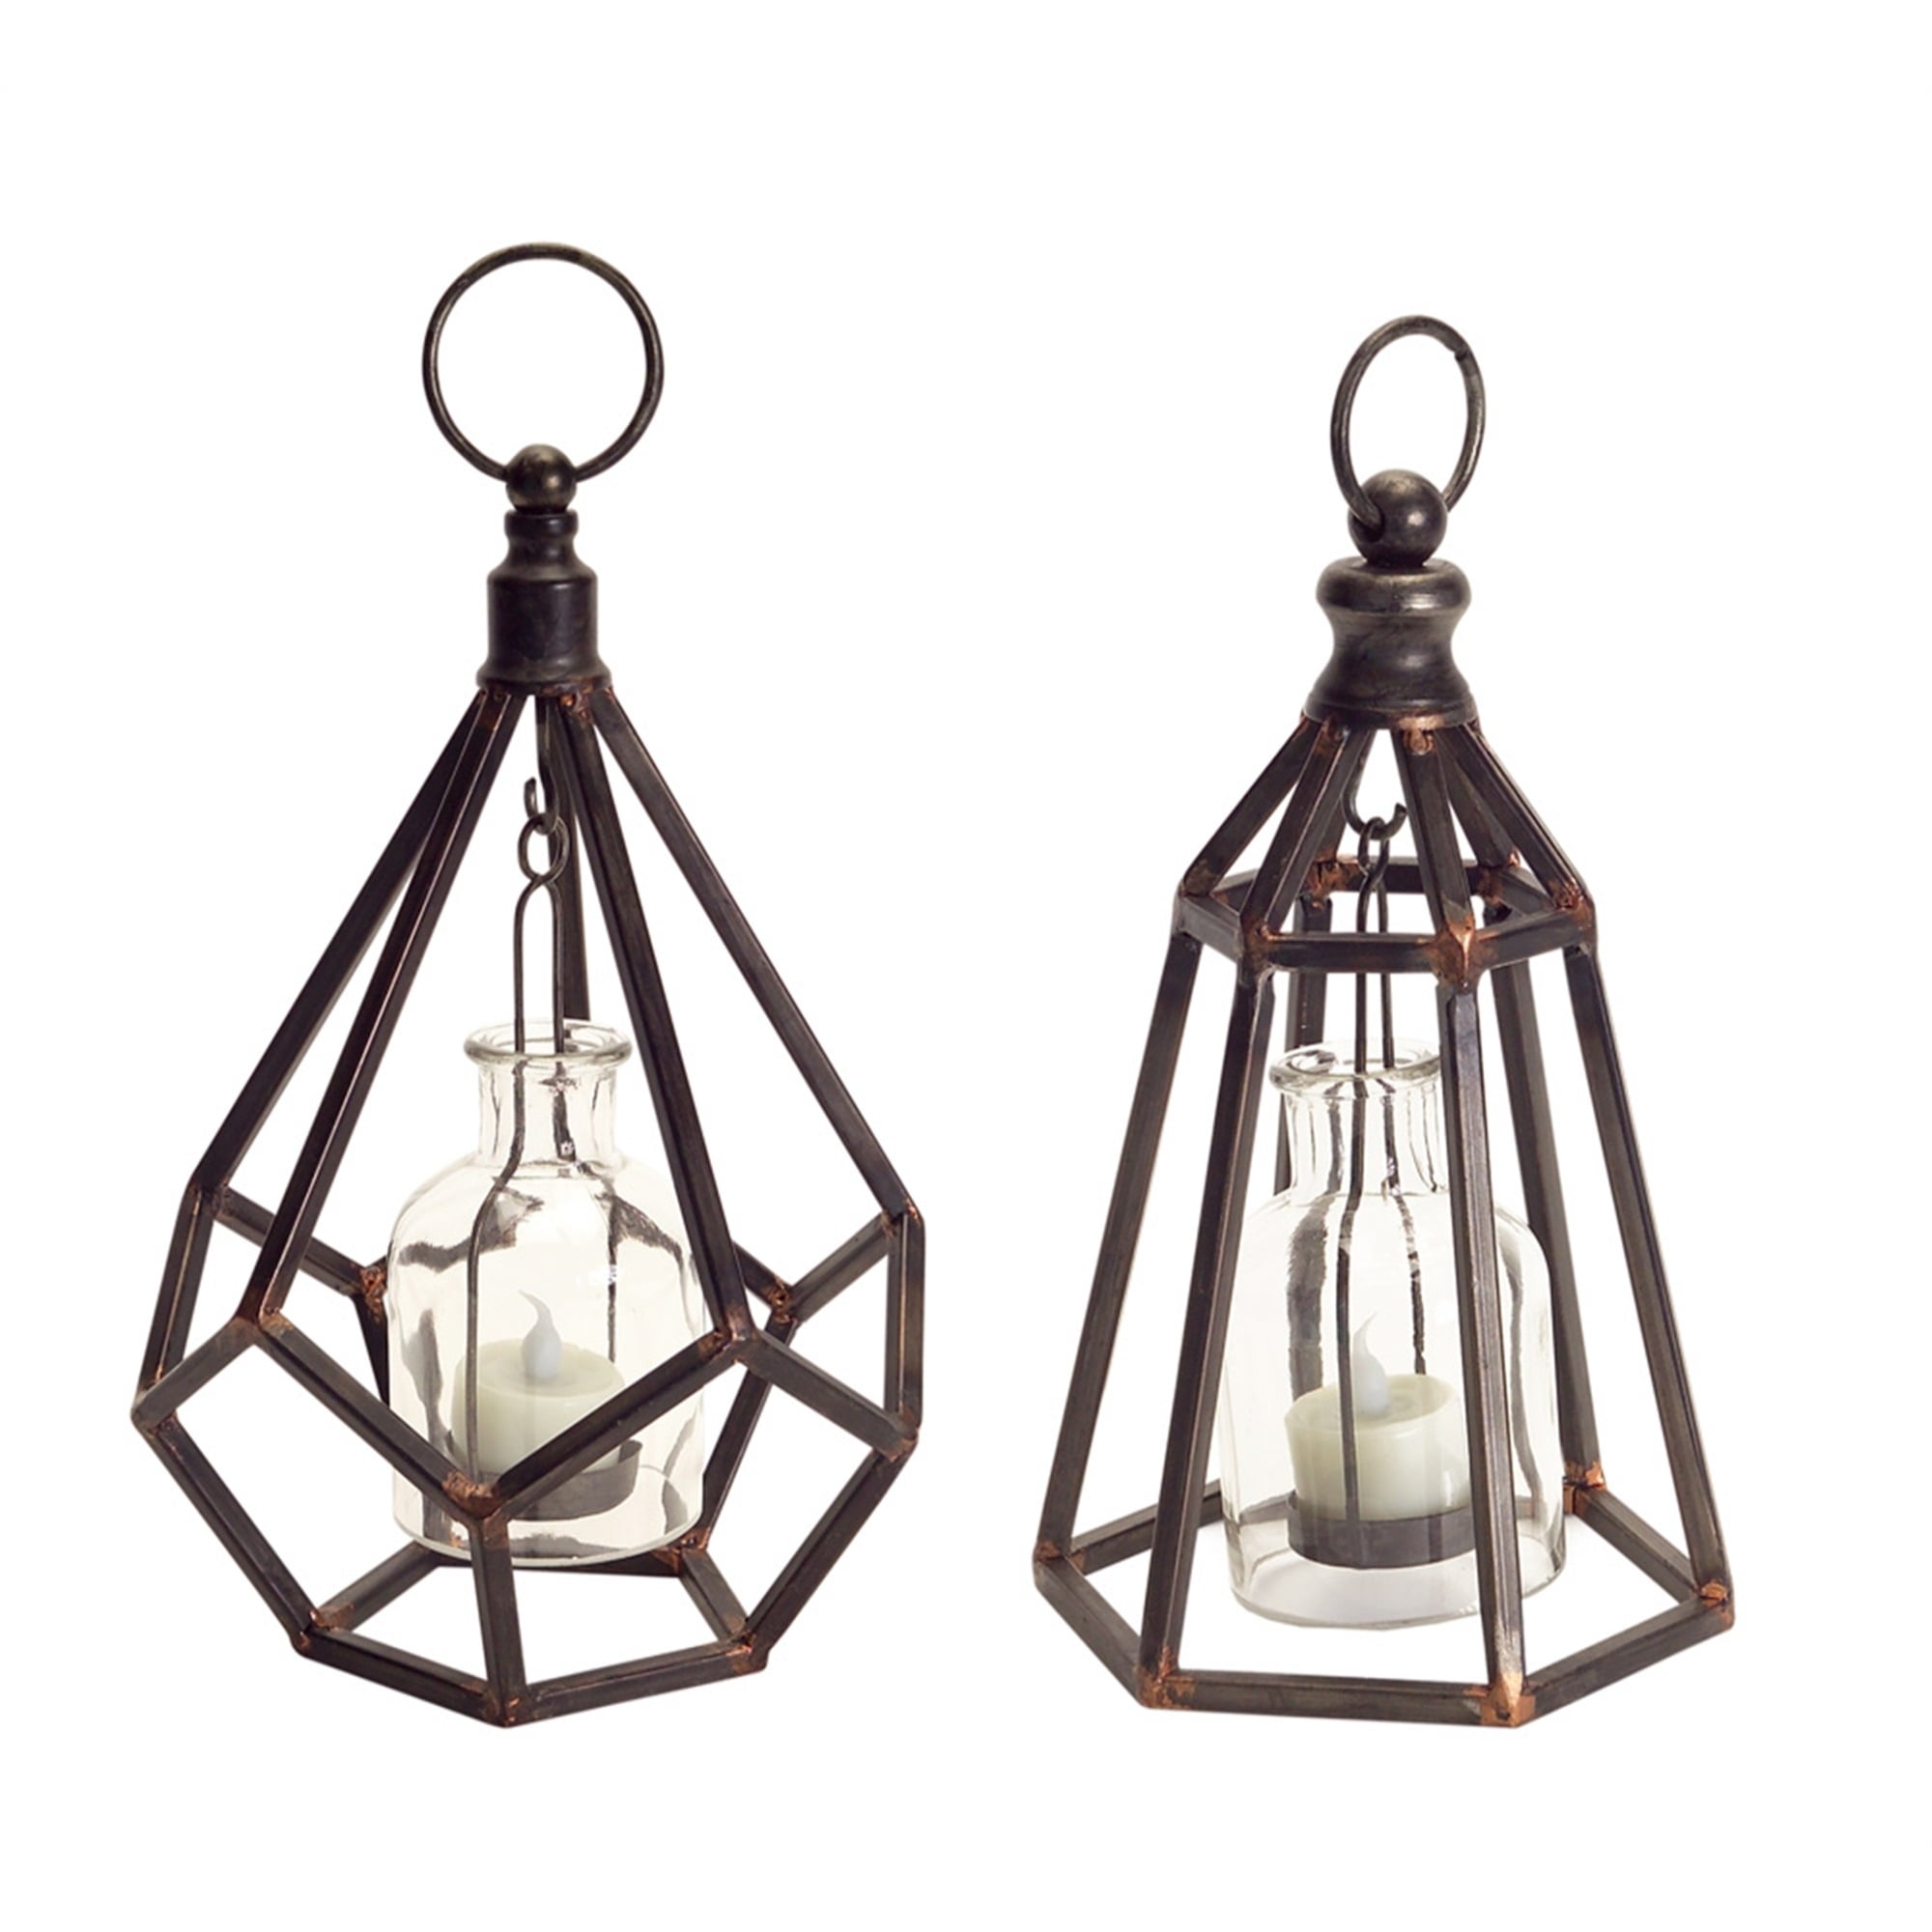 Hanging Tea Light Holder (Set of 2) 10.5"H Metal/Glass